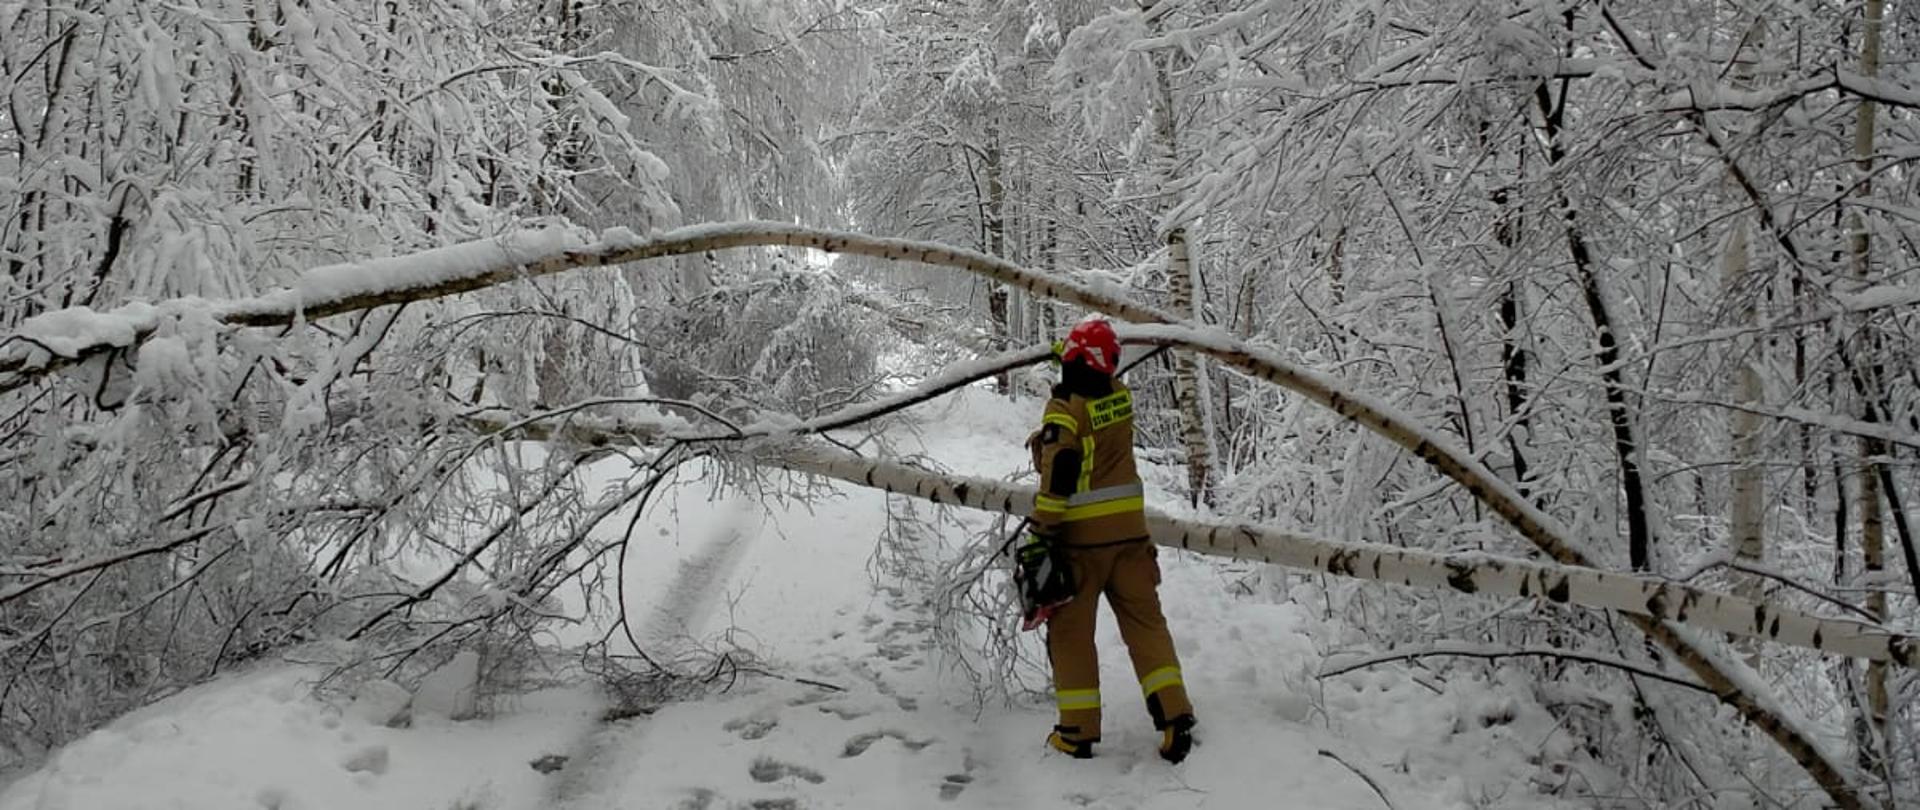 Na zdjęciu widoczne powalone drzewo na zaśnieżonej drodze. Przed drzewem strażak w umundurowaniu z piła motorową.